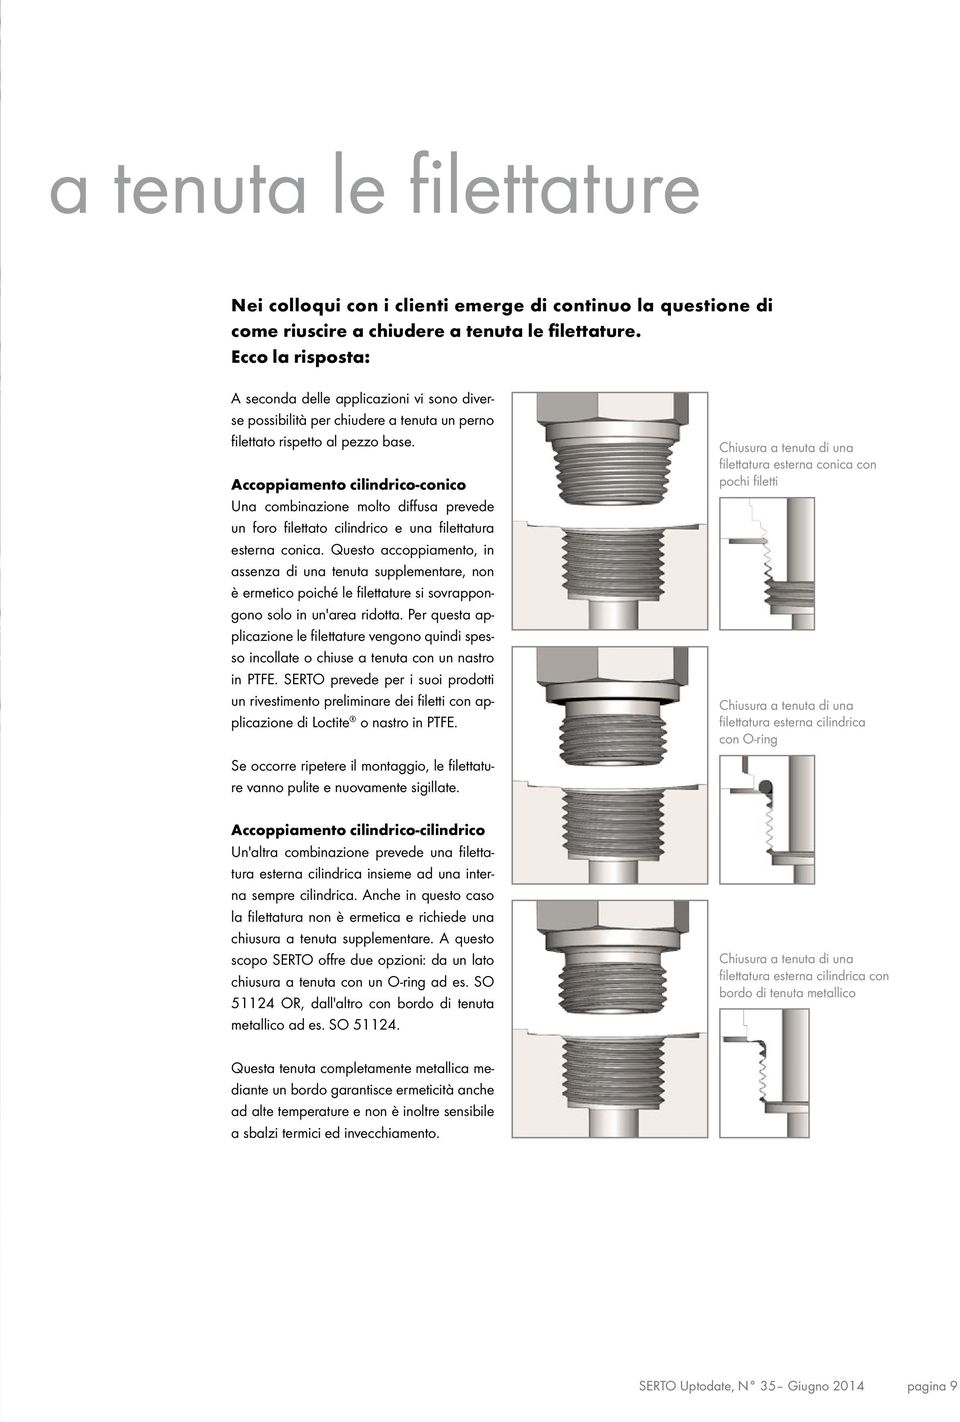 Accoppiamento cilindrico-conico Una combinazione molto diffusa prevede un foro filettato cilindrico e una filettatura esterna conica.